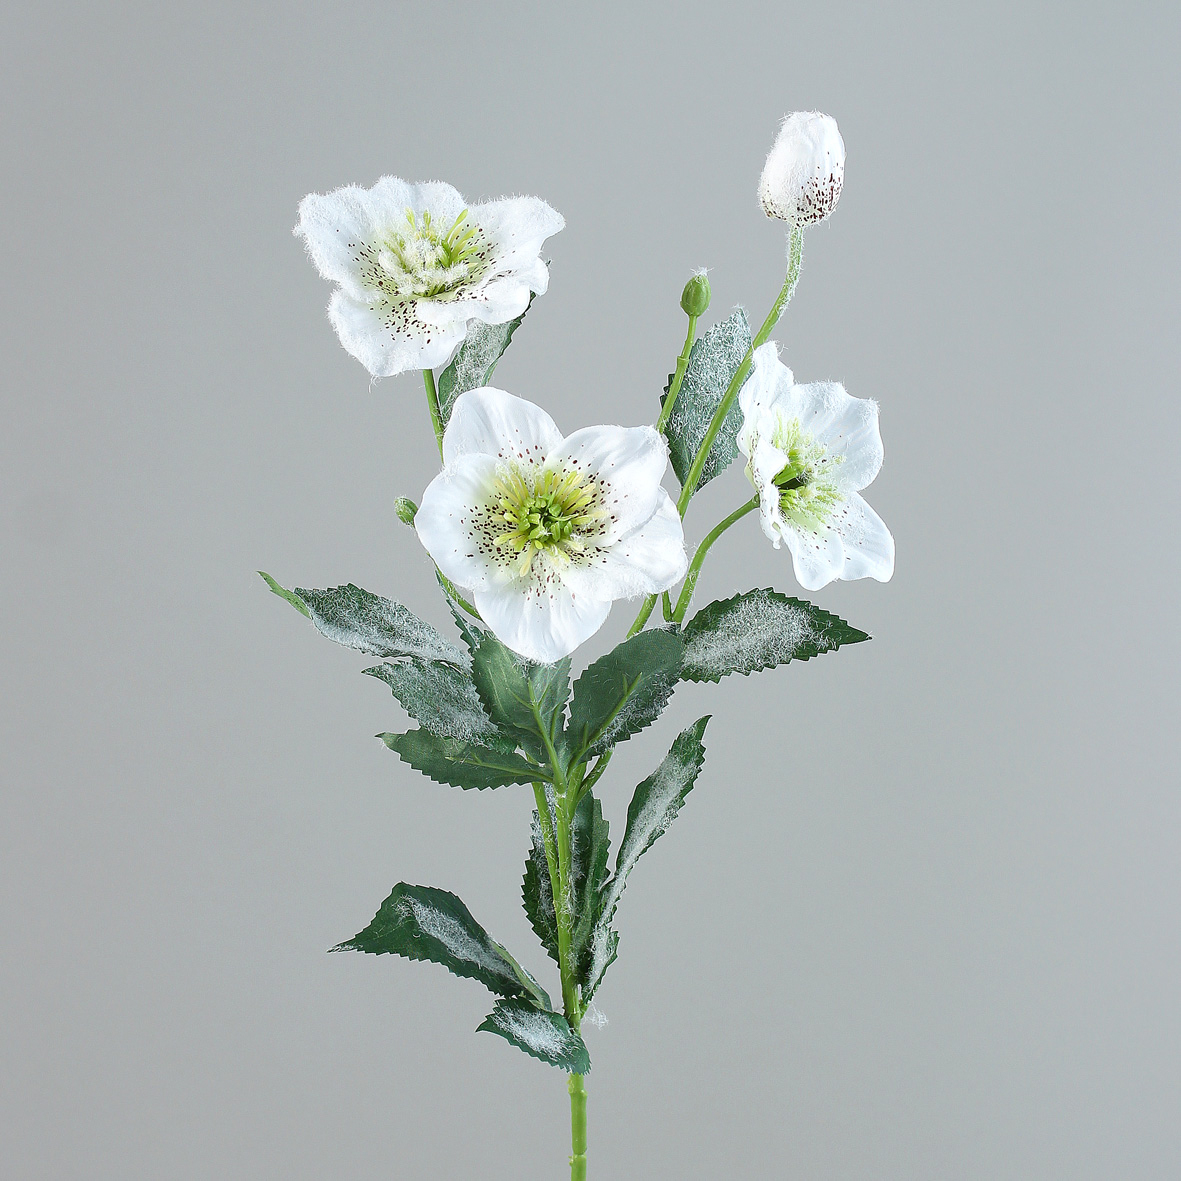 Christrosenzweig 60cm weiß-creme mit Eis und Schnee DP Seidenblumen künstliche Blumen Christrose Hel